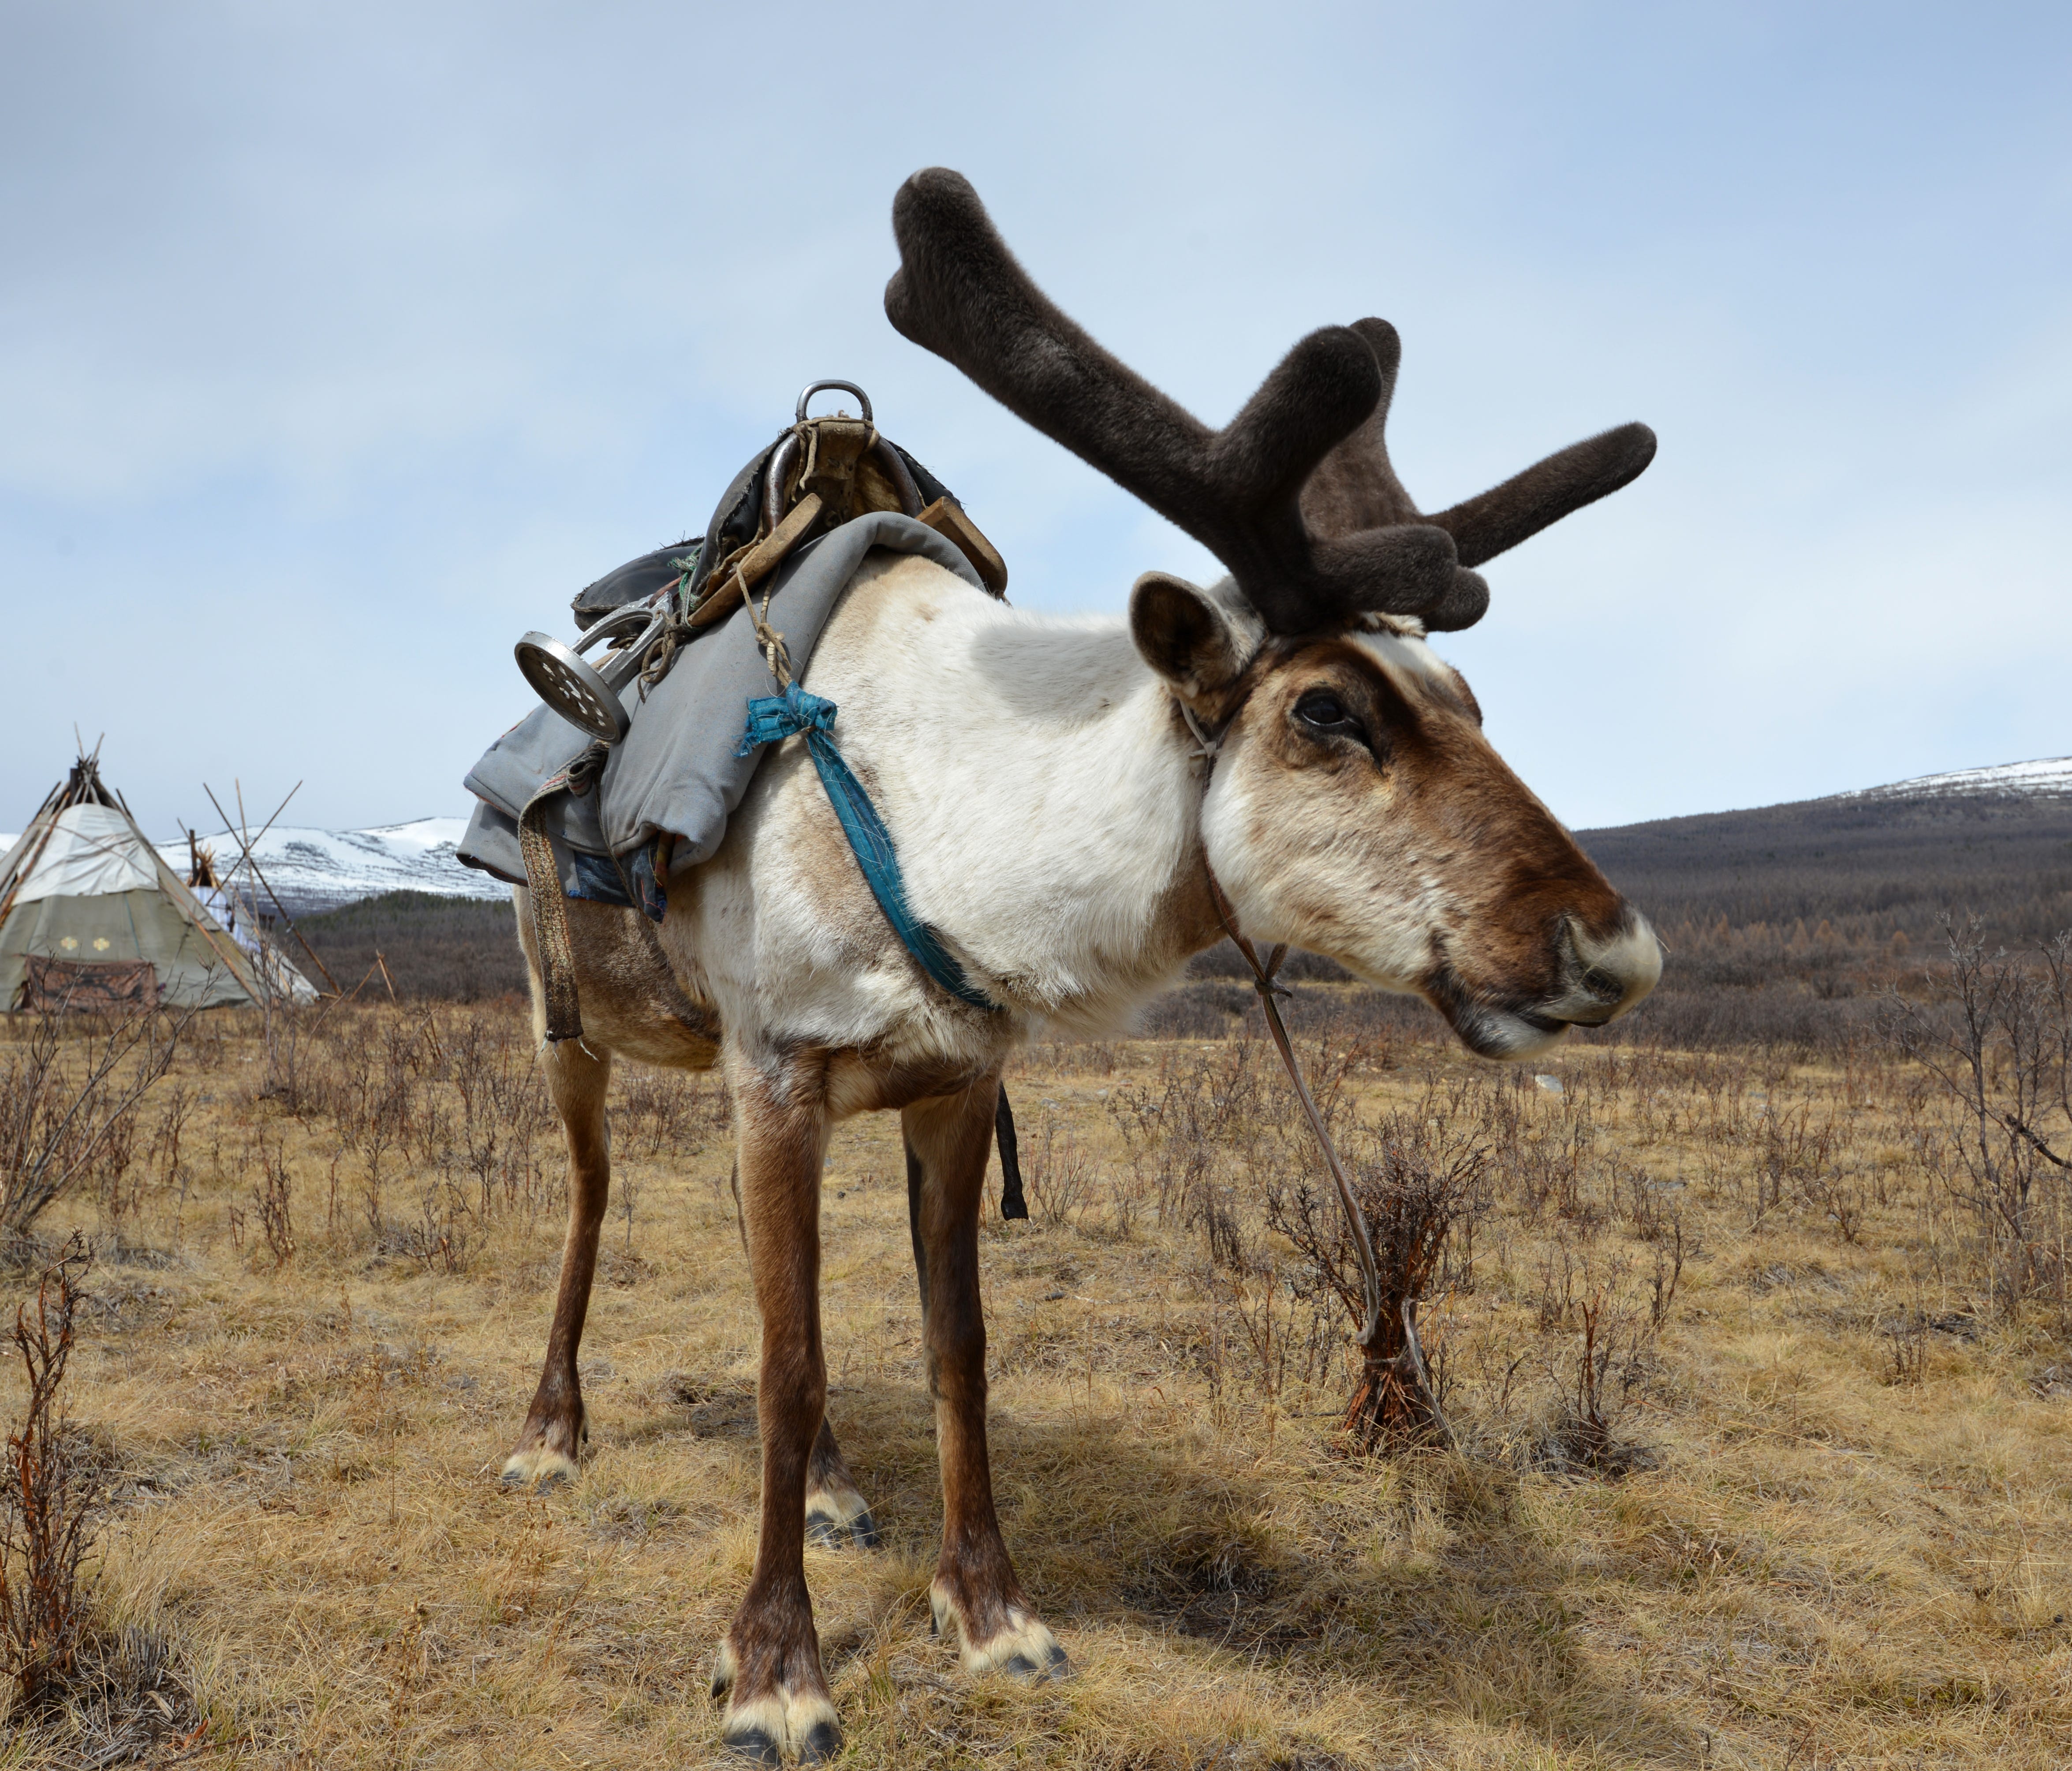 The Tsaatan reindeer herders ride reindeer as if they were horses.